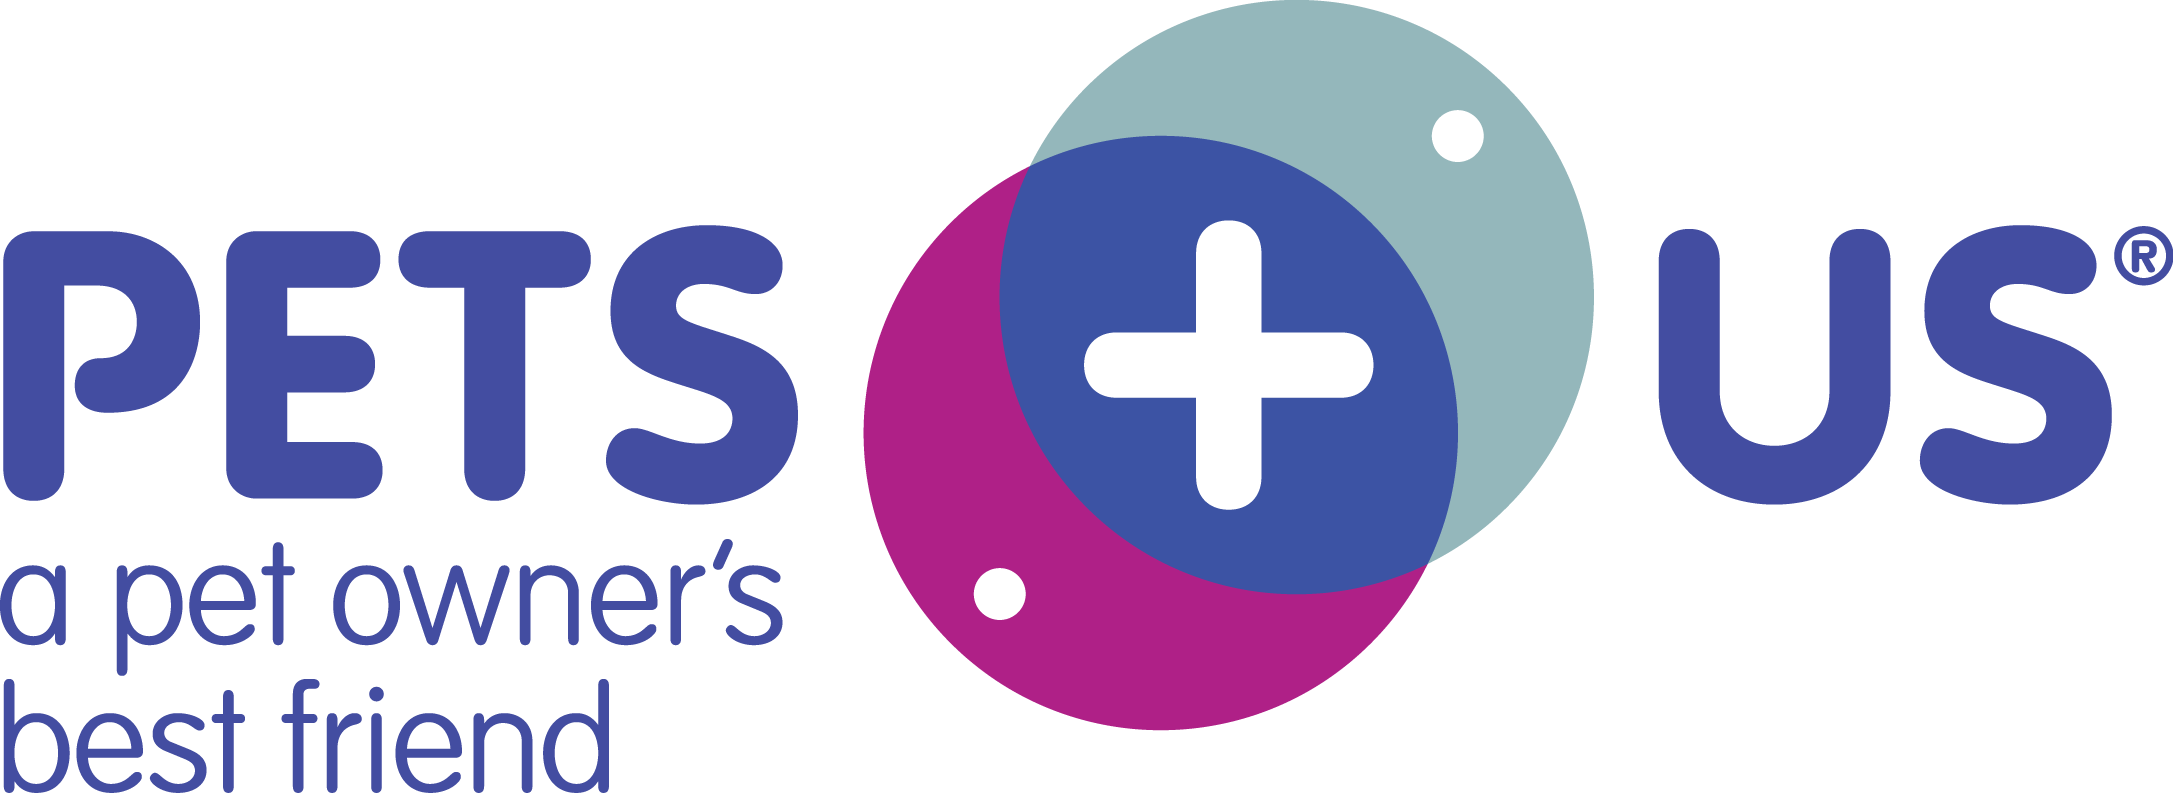 Google Review Us Logo - Pets Plus Us | Pet Insurance Review